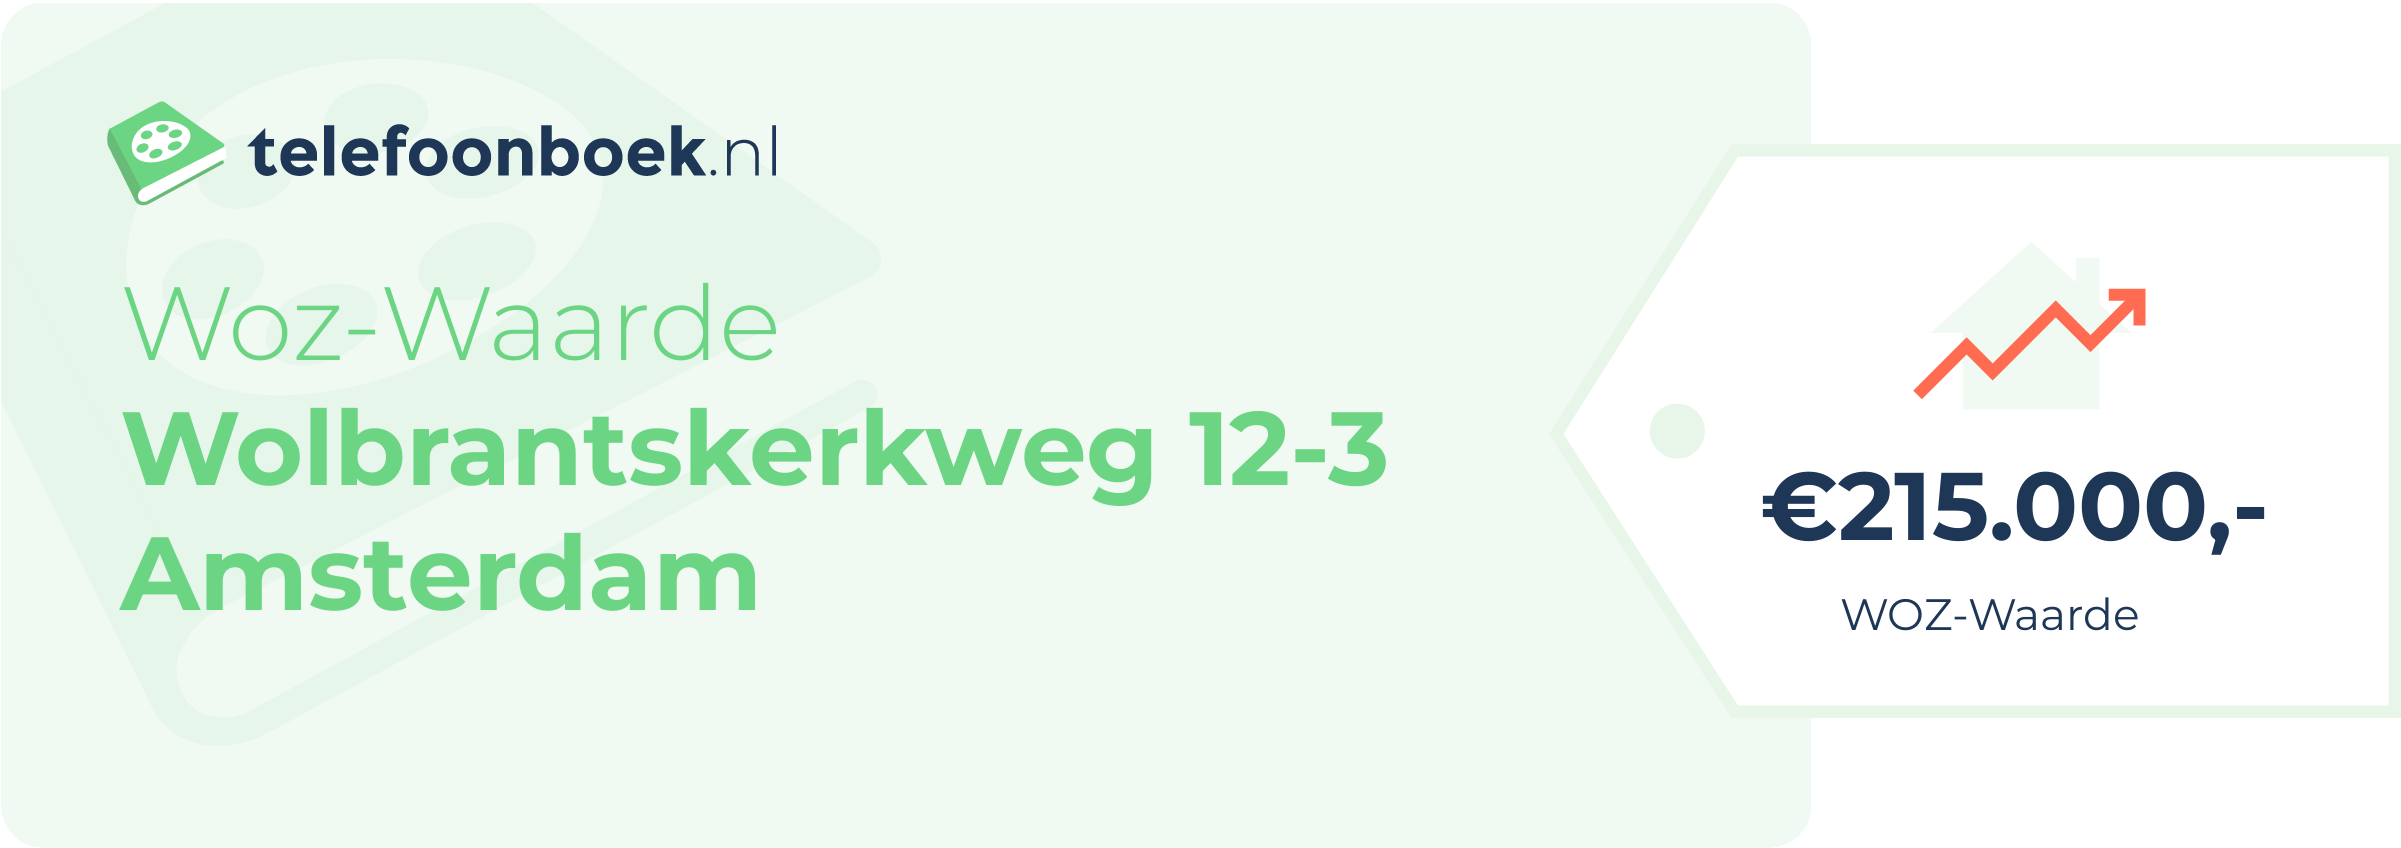 WOZ-waarde Wolbrantskerkweg 12-3 Amsterdam